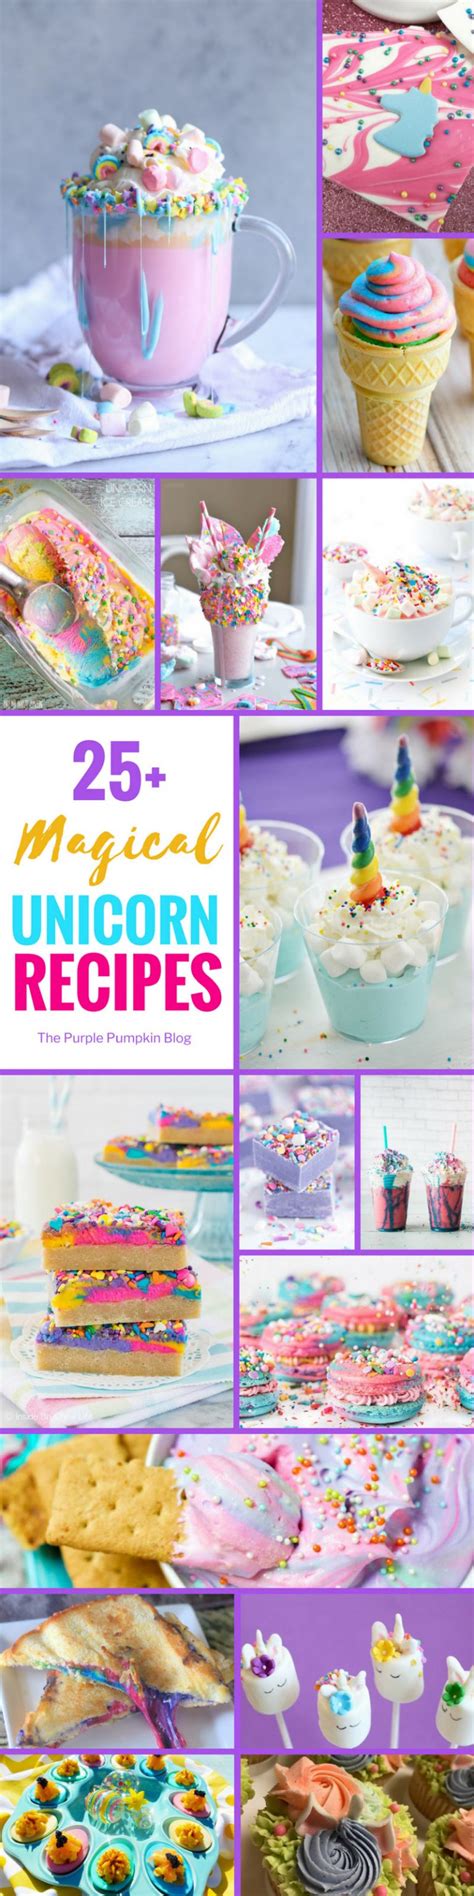 25 Magical Unicorn Recipes